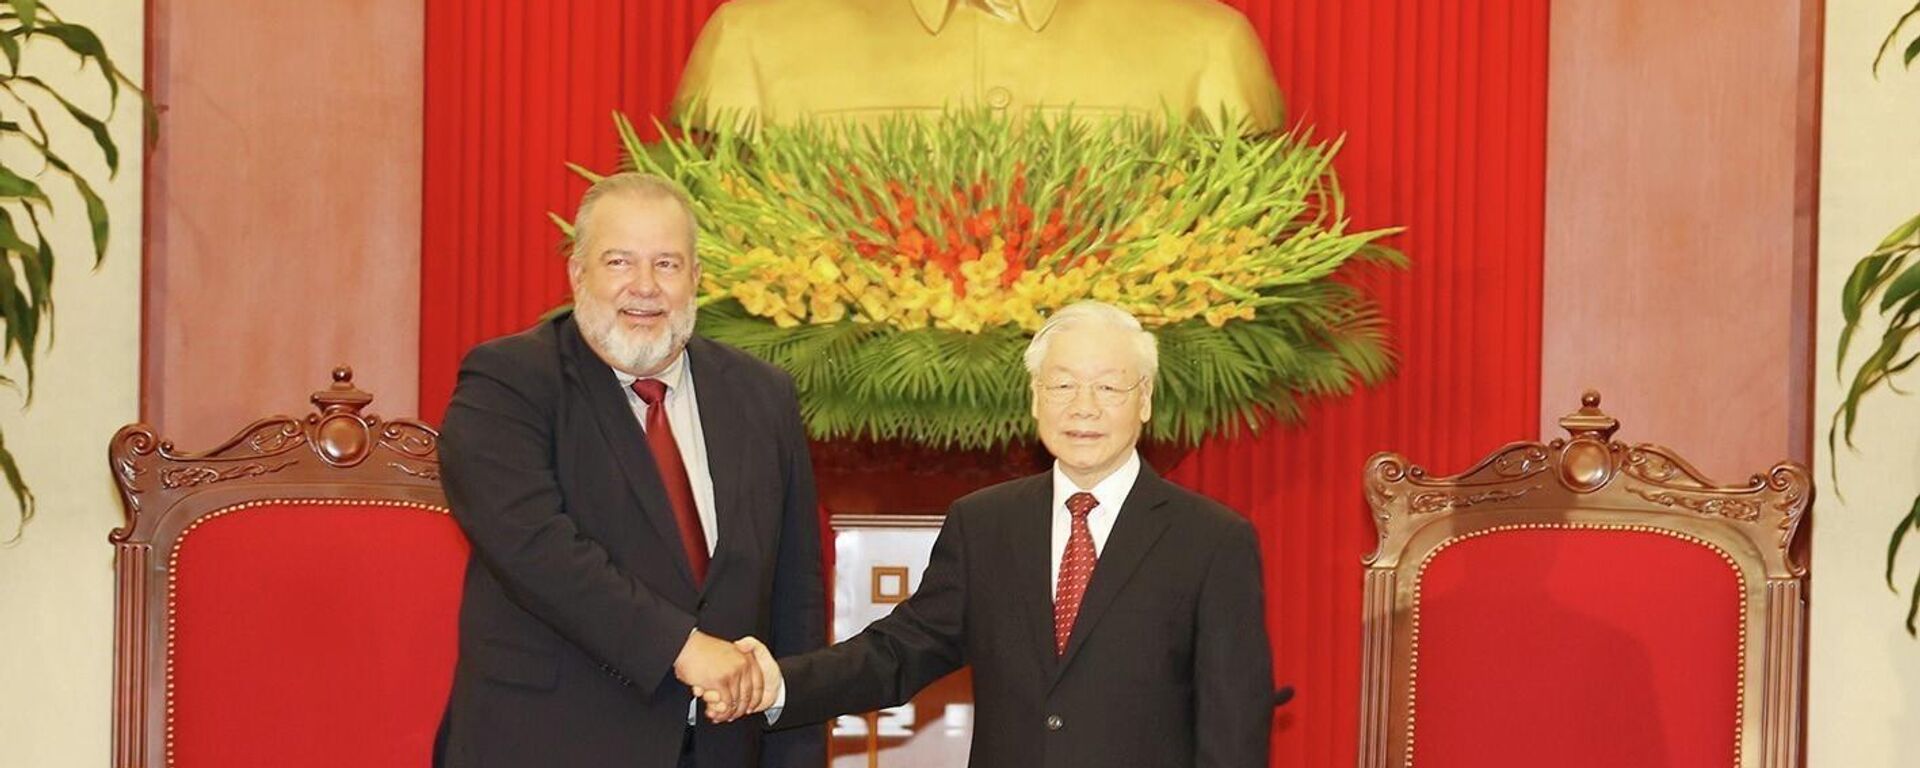 Tổng Bí thư Nguyễn Phú Trọng tiếp Thủ tướng Cuba Manuel Marrero Cruz thăm hữu nghị chính thức Việt Nam - Sputnik Việt Nam, 1920, 29.09.2022